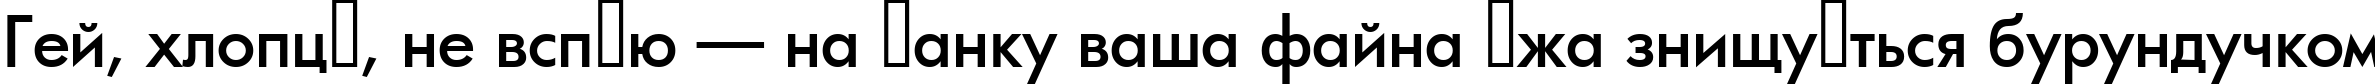 Пример написания шрифтом a_FuturicaMedium текста на украинском